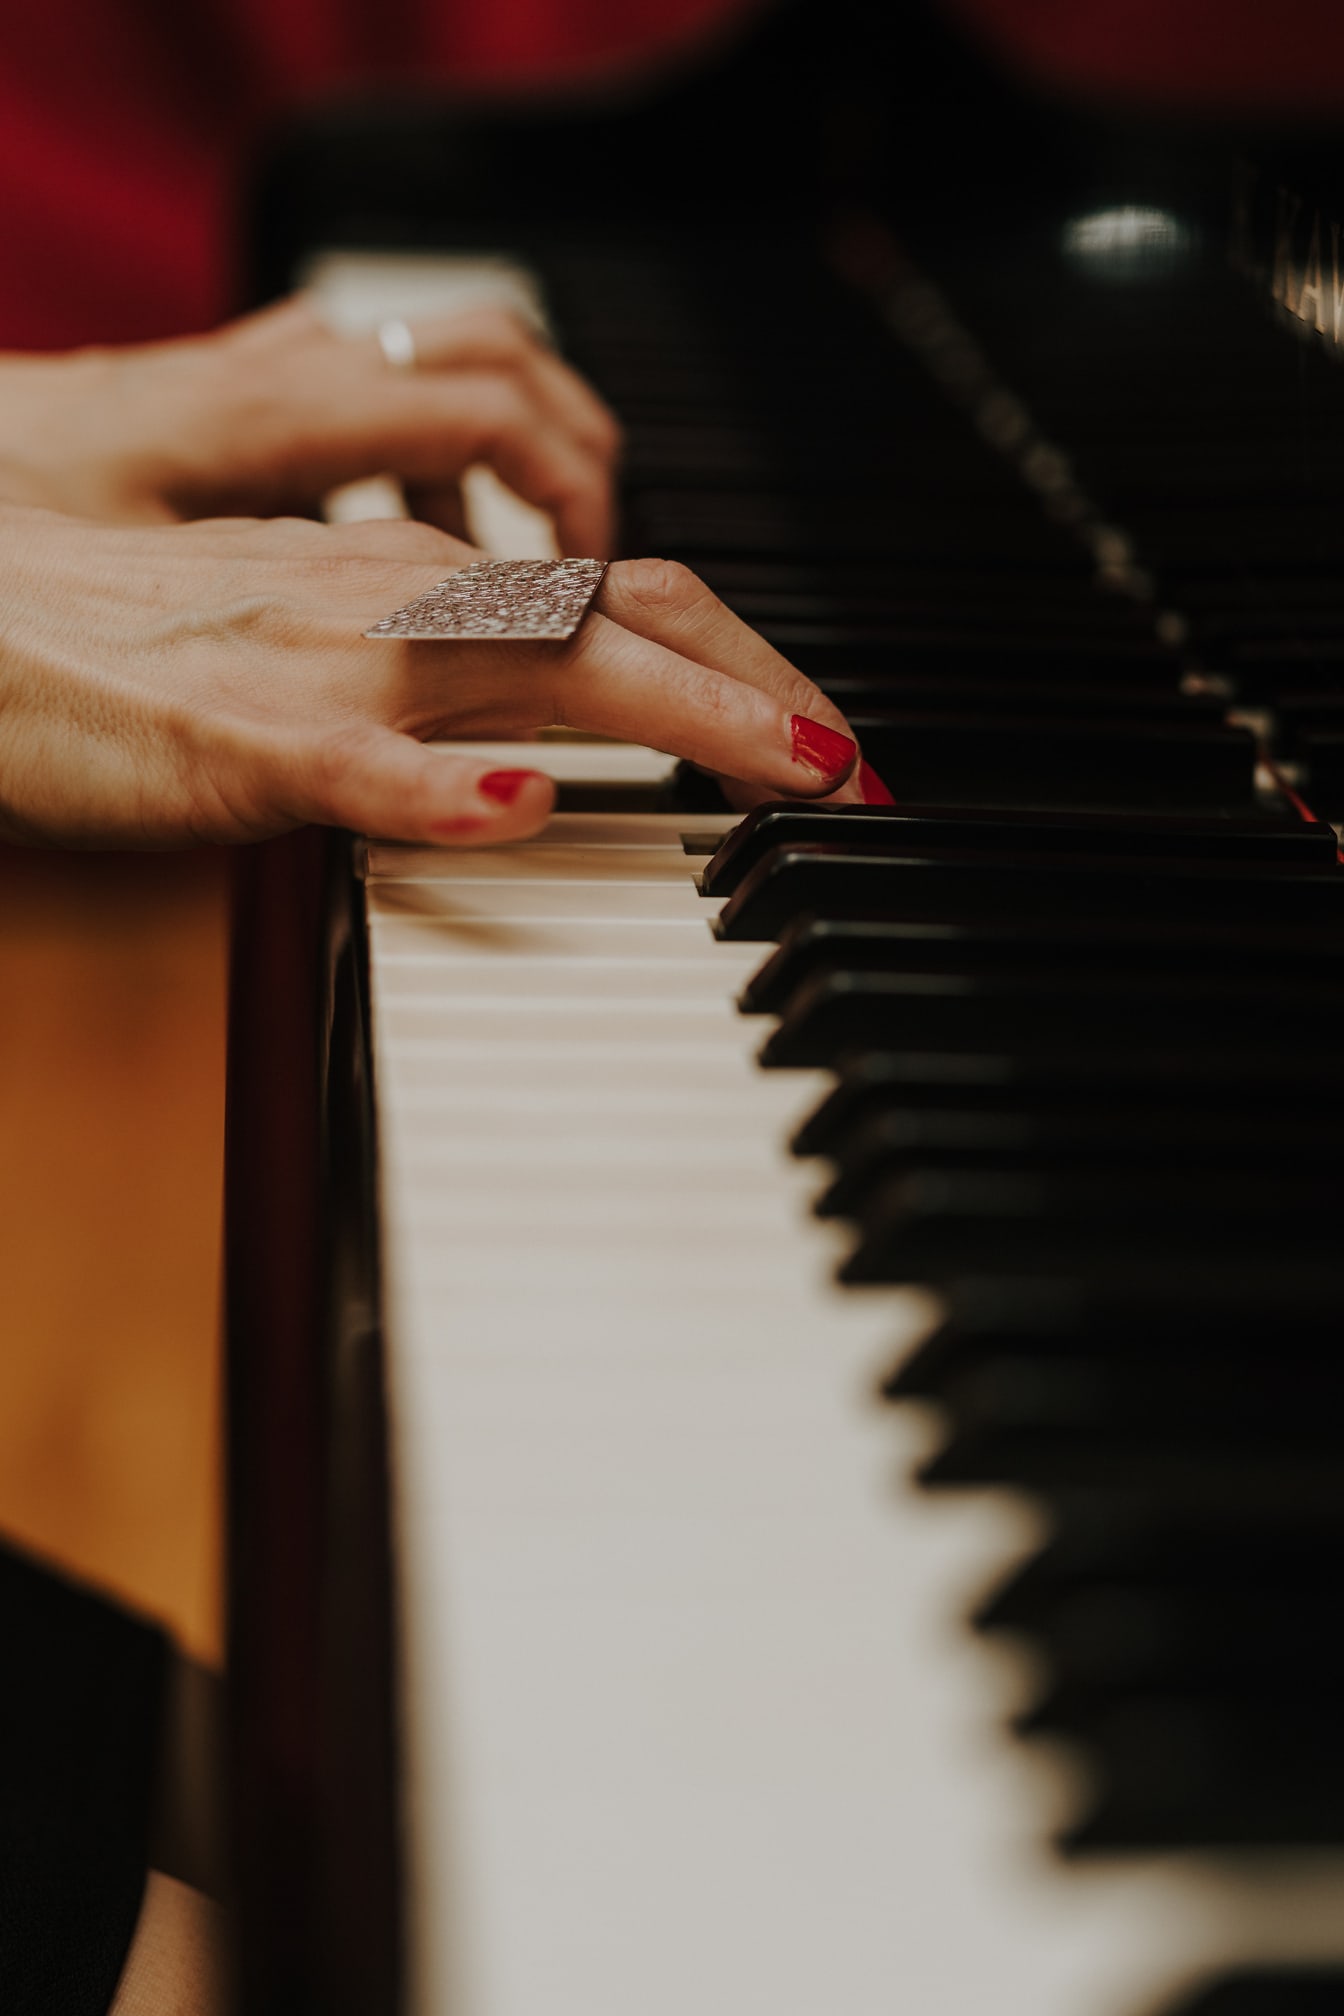 Közeli kép zongorázásról, piros körömlakkal az ujjakon